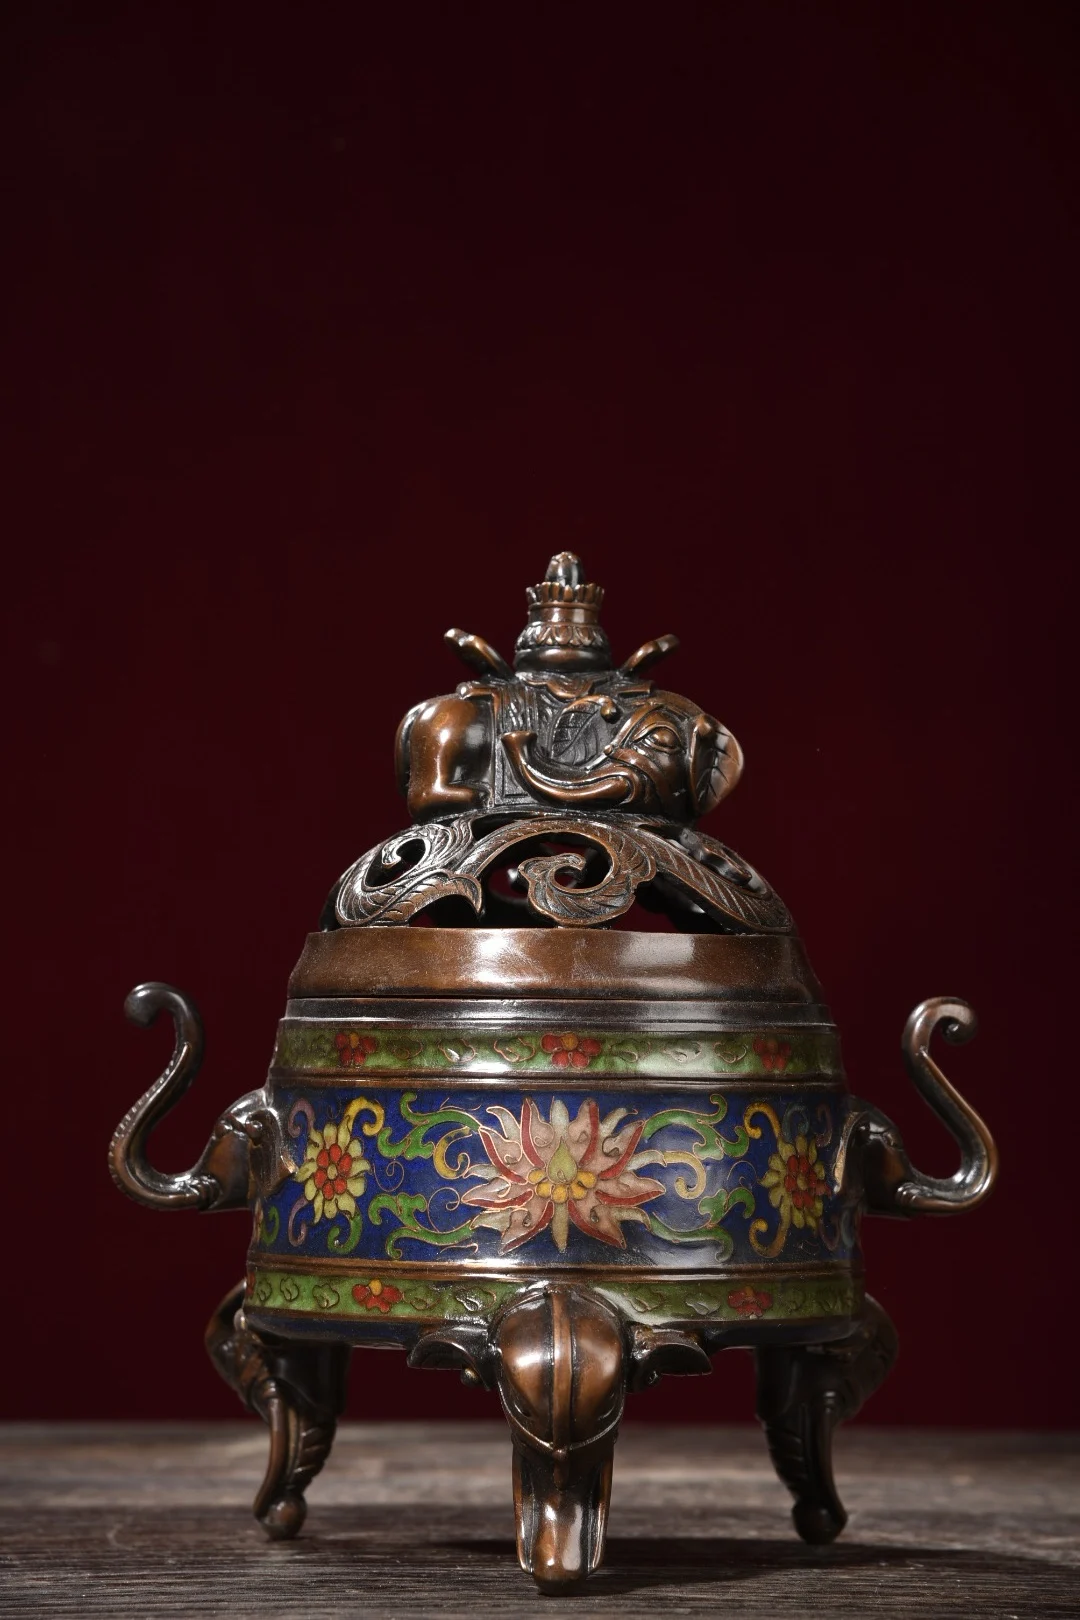 

Коллекция тибетских храмов 10 дюймов, старомодная эмалированная статуя слона, держатель ушей, штатив, курильница, городской домик